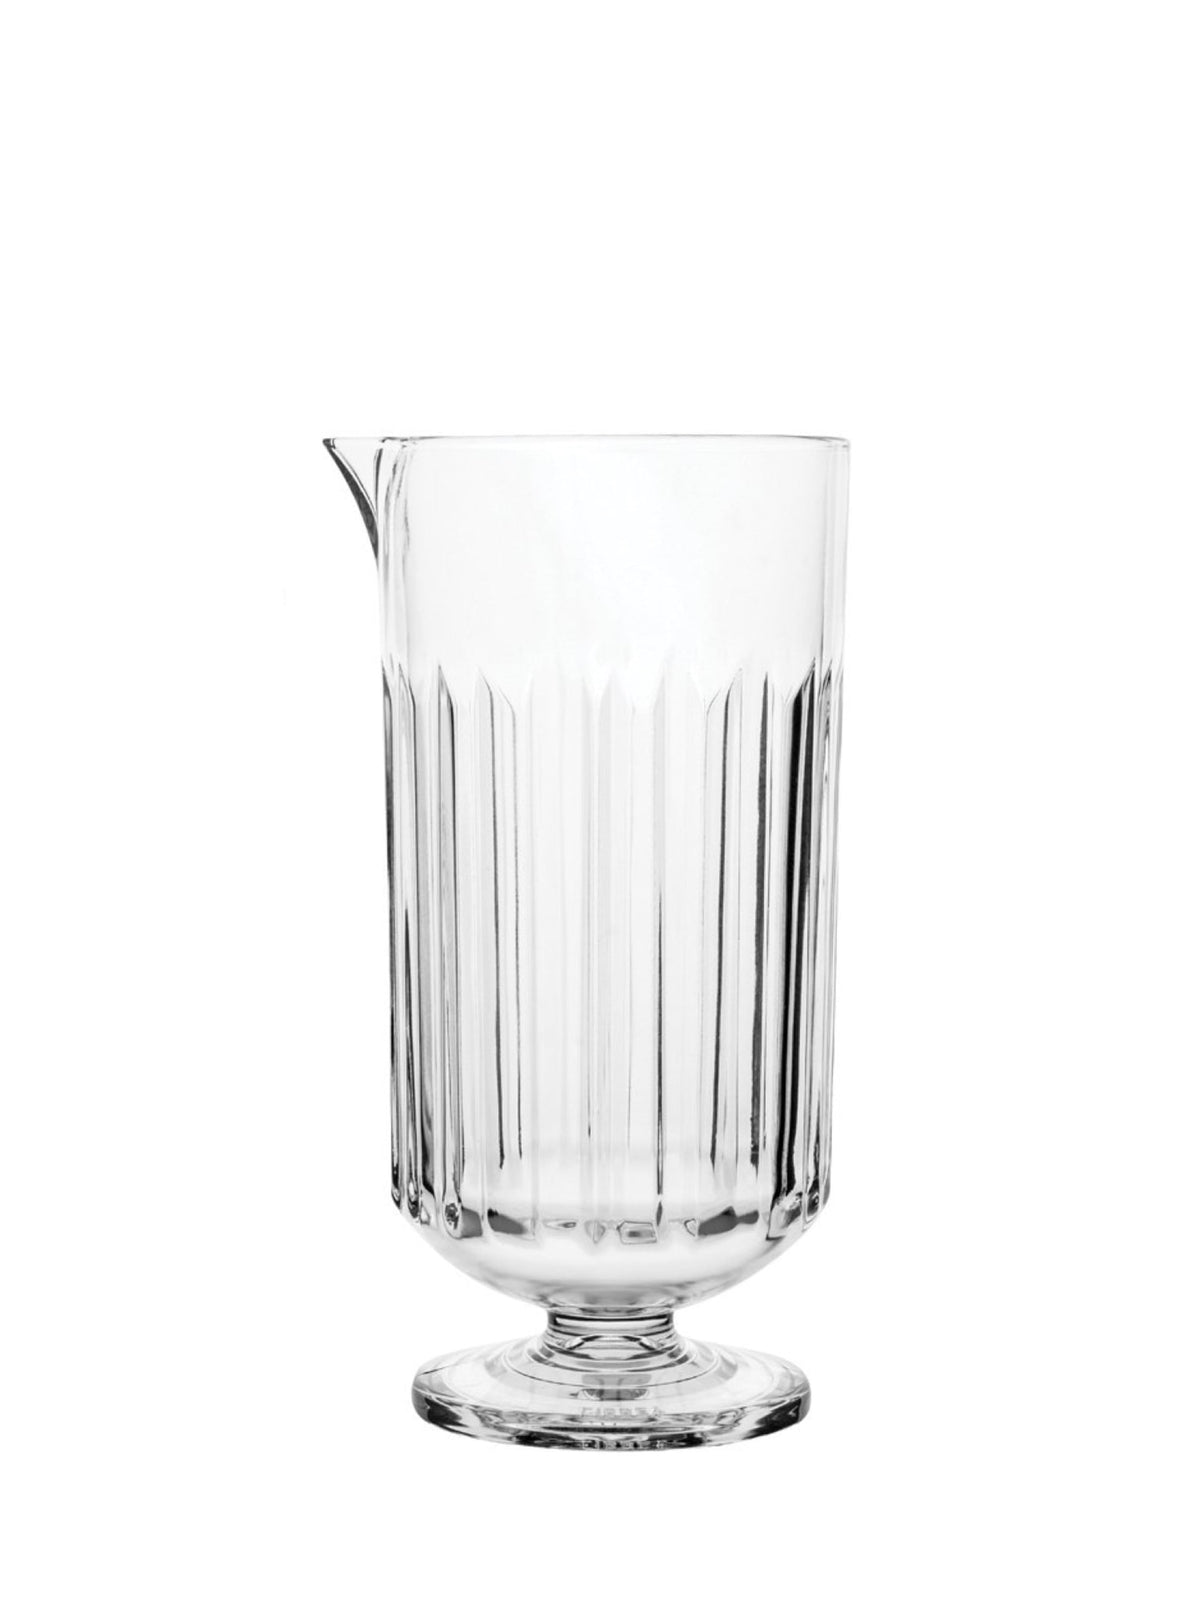 Et smukt designet glas til professionelle bartendere og cocktailentusiaster